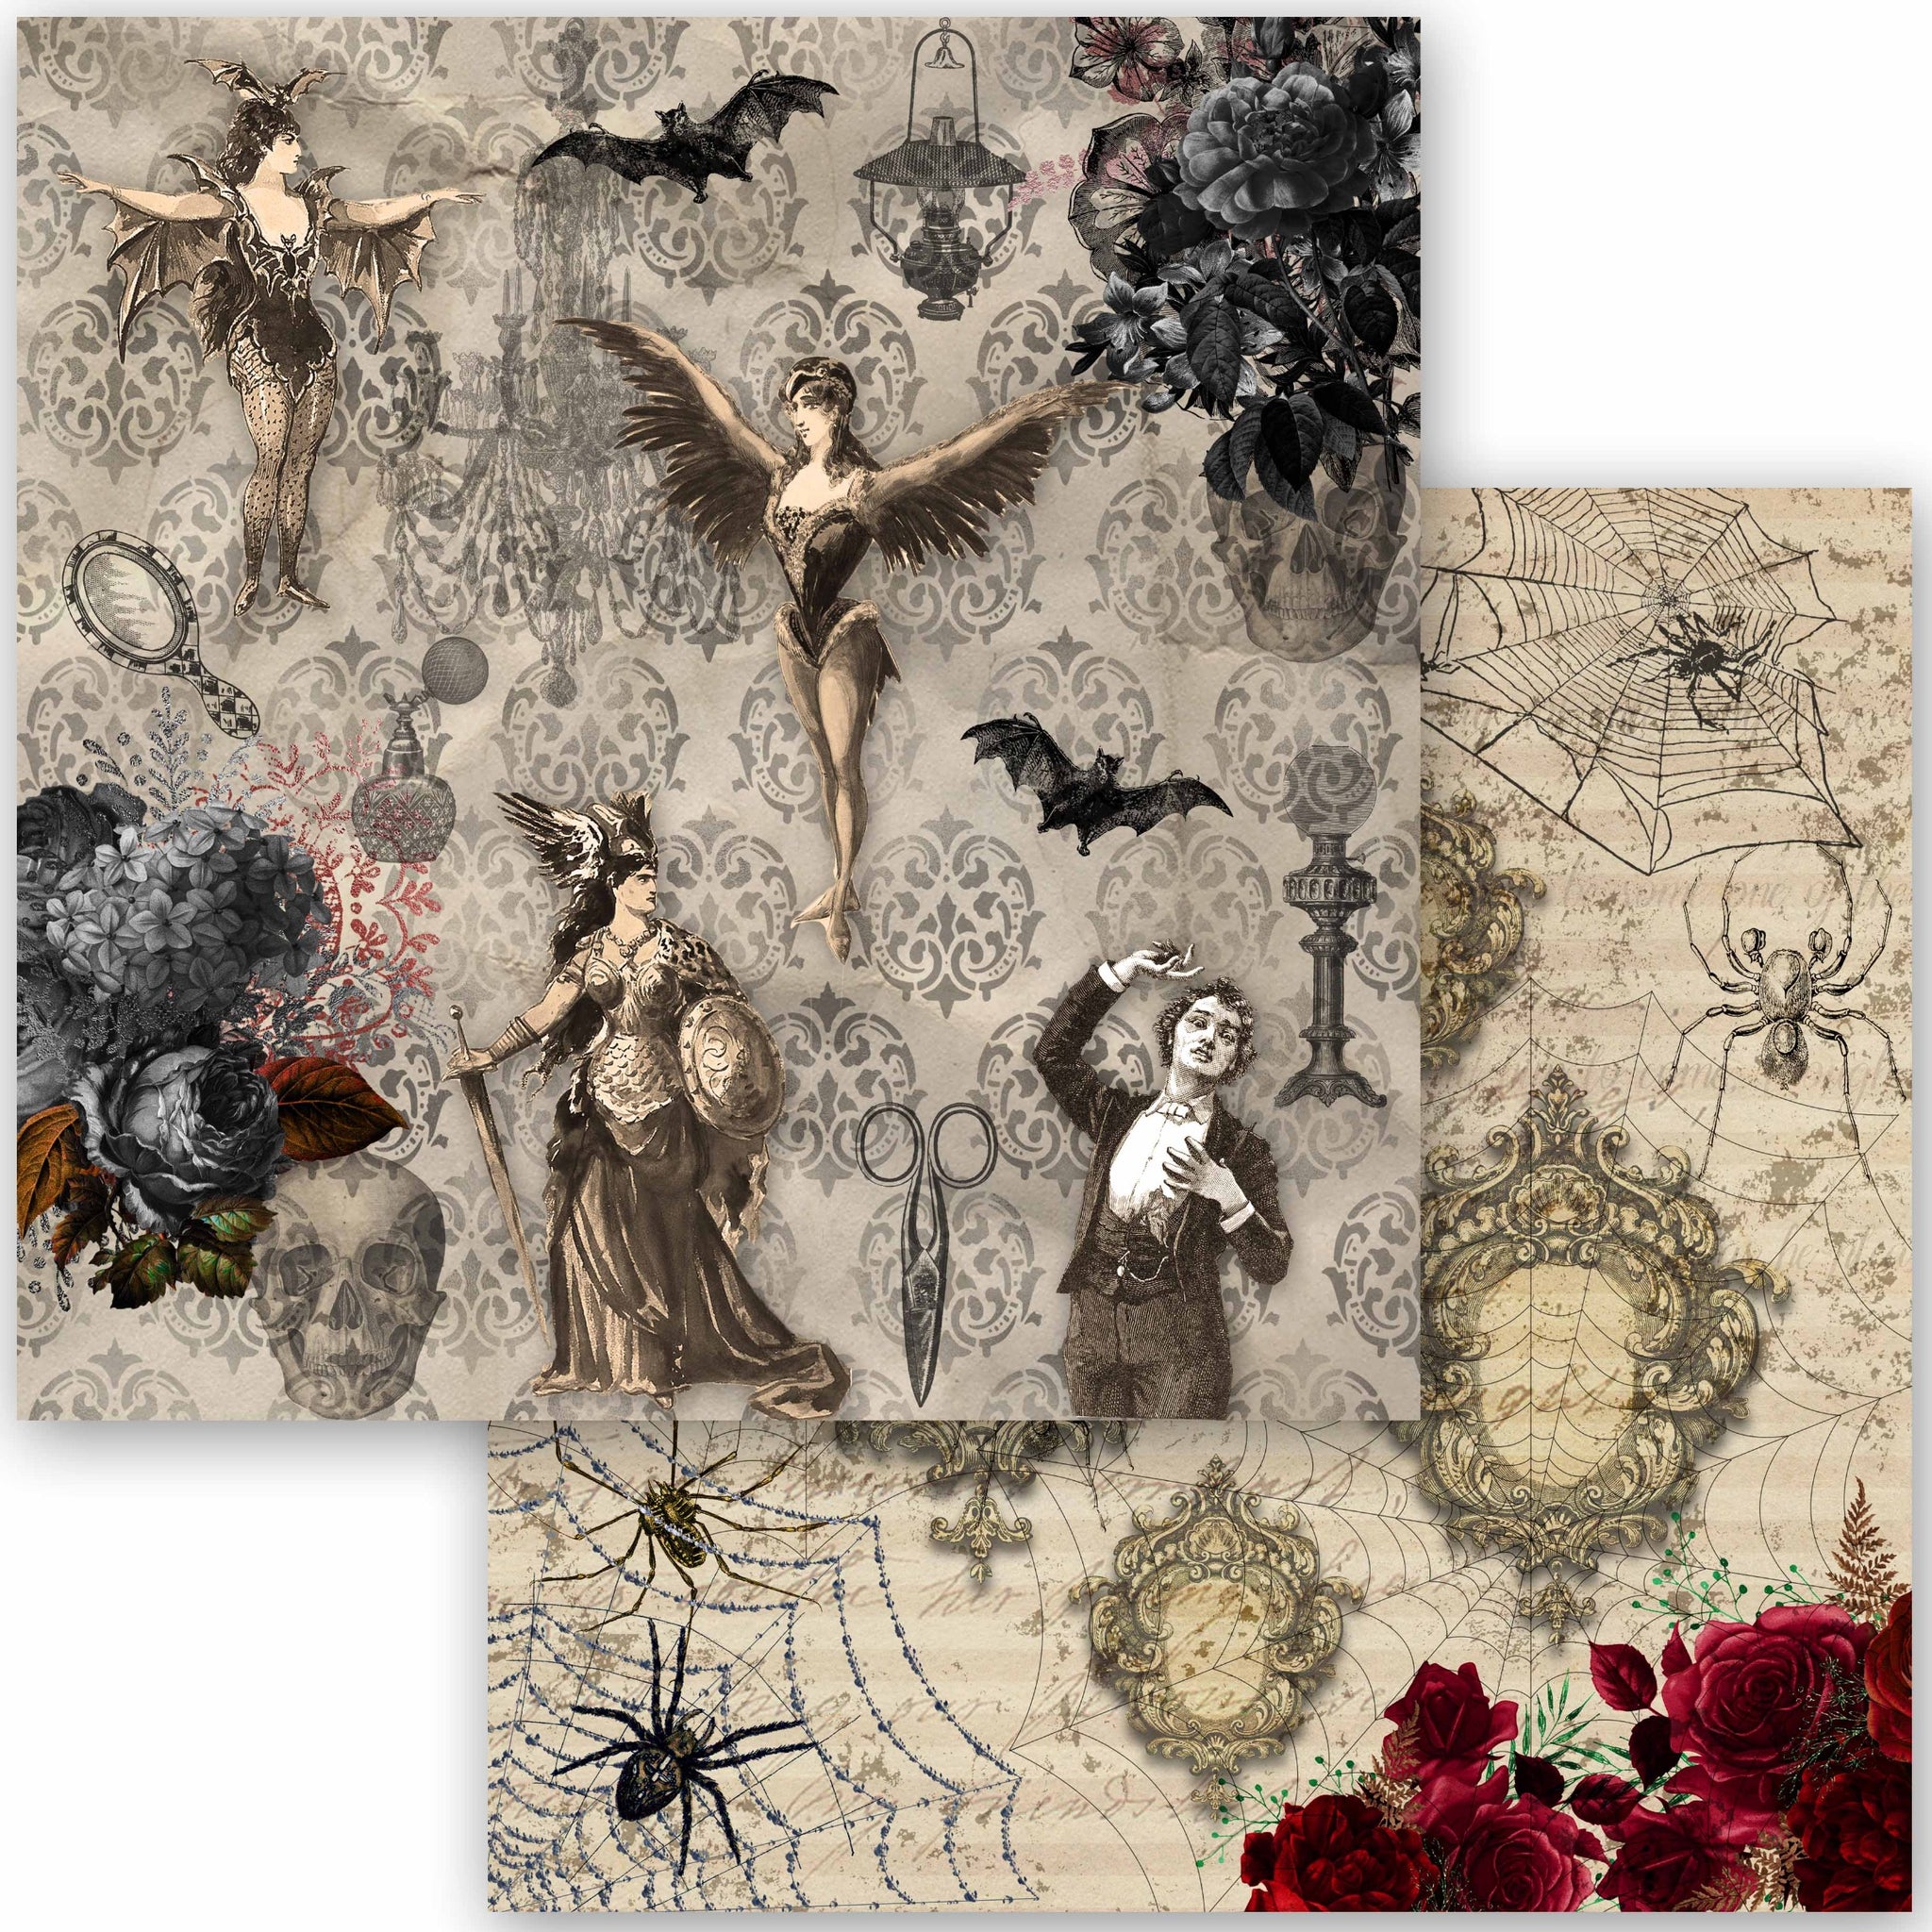 Halloween Collection Scrapbook Paper, Decoupage Queen, 24 Designs – My  Victorian Heart